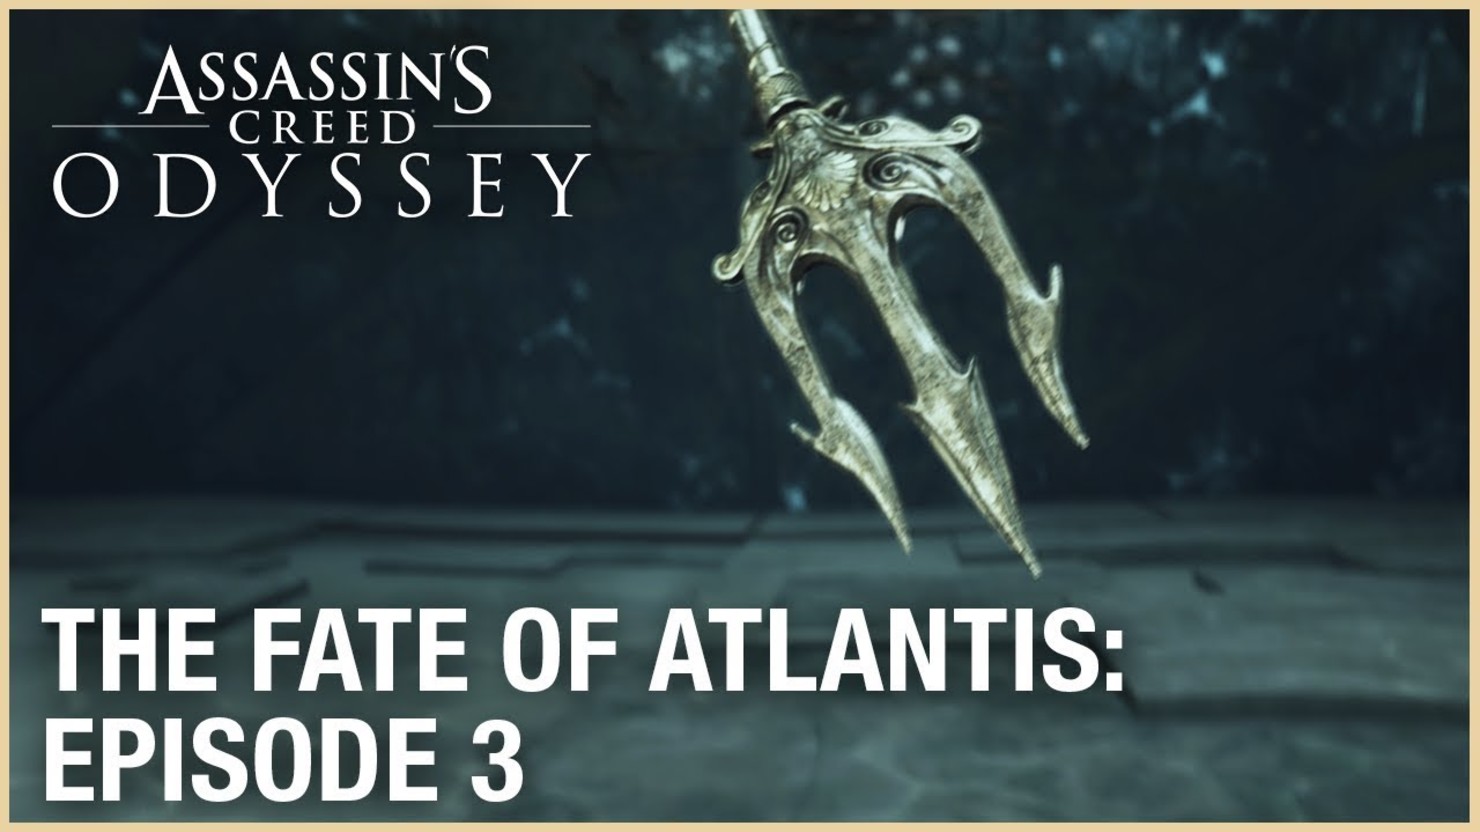 The fate of atlantis. Assassin's Creed: Odyssey - the Fate of Atlantis. The Fate of Atlantis Assassins Creed Odyssey в стиме. Откровения войны Одиссея. Assassin's Creed the Fate of Atlantis Wallpapers.